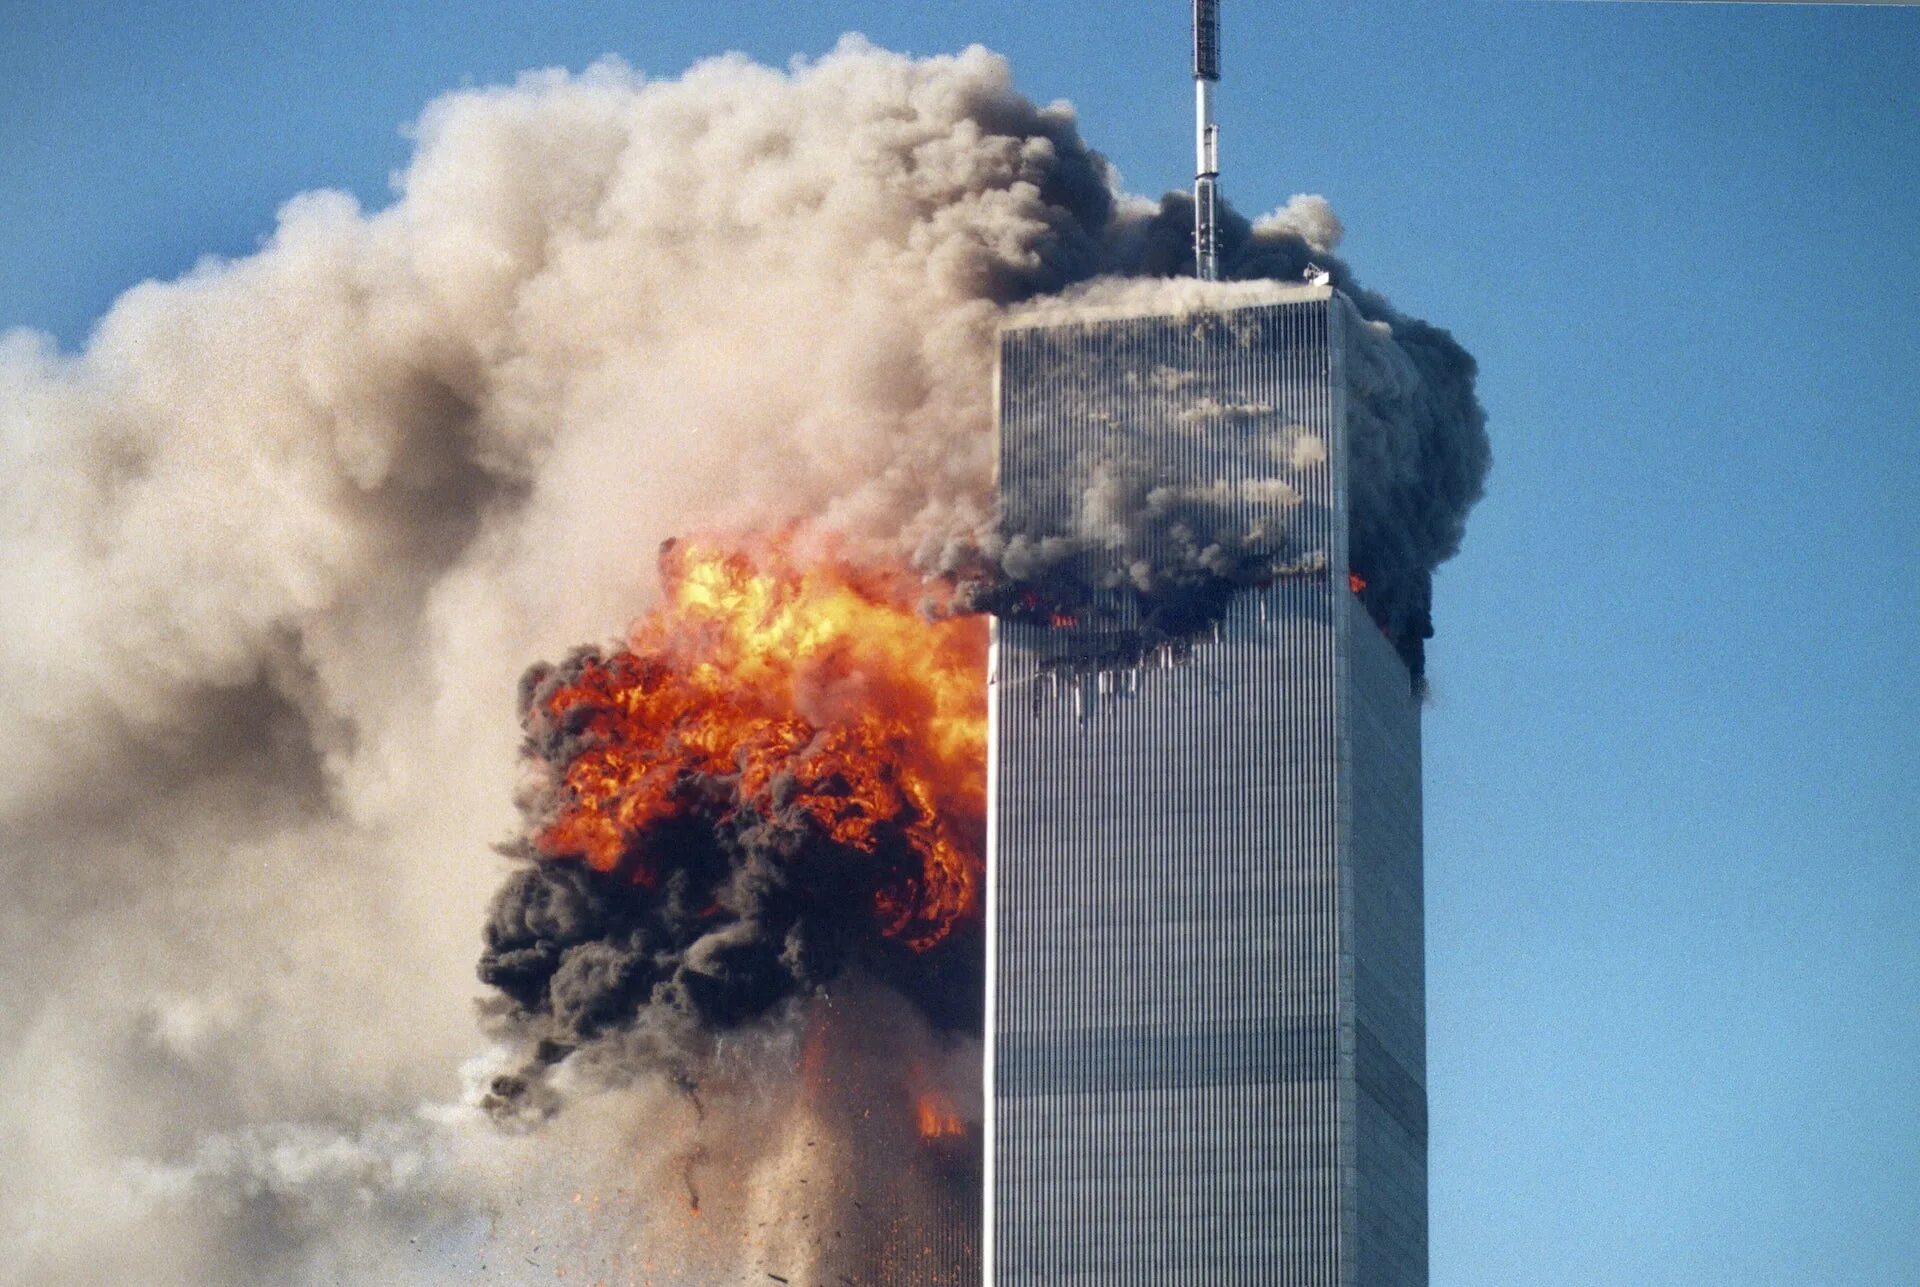 Башни Близнецы 11 сентября. Горящие башни ВТЦ 11 сентября 2001 года. 11 июня 21